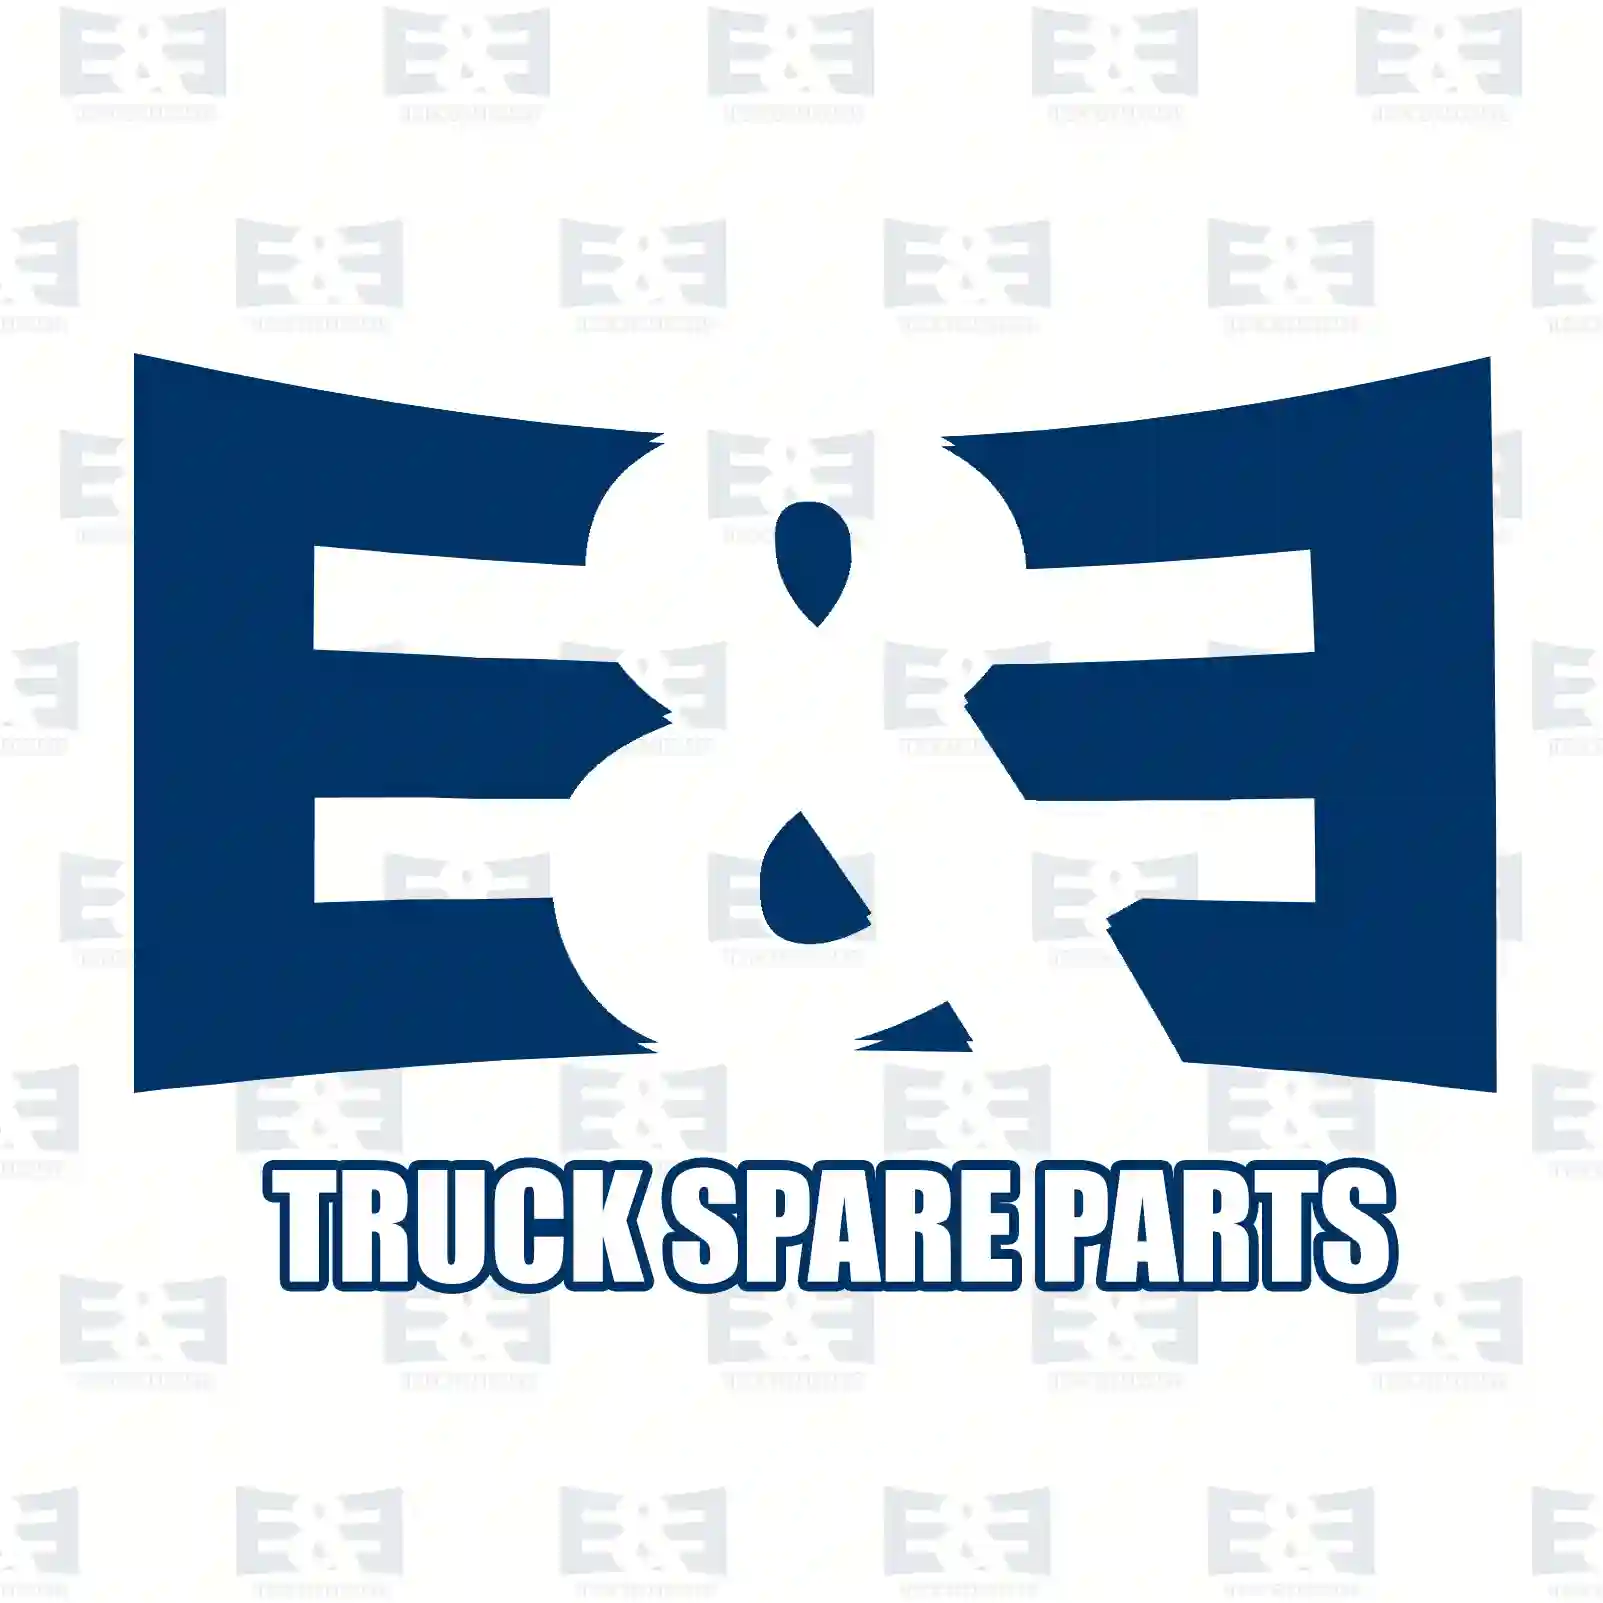 Brake disc, 2E2296274, 02996043, 07186485, 2996043, 7186485, , , , , , ||  2E2296274 E&E Truck Spare Parts | Truck Spare Parts, Auotomotive Spare Parts Brake disc, 2E2296274, 02996043, 07186485, 2996043, 7186485, , , , , , ||  2E2296274 E&E Truck Spare Parts | Truck Spare Parts, Auotomotive Spare Parts